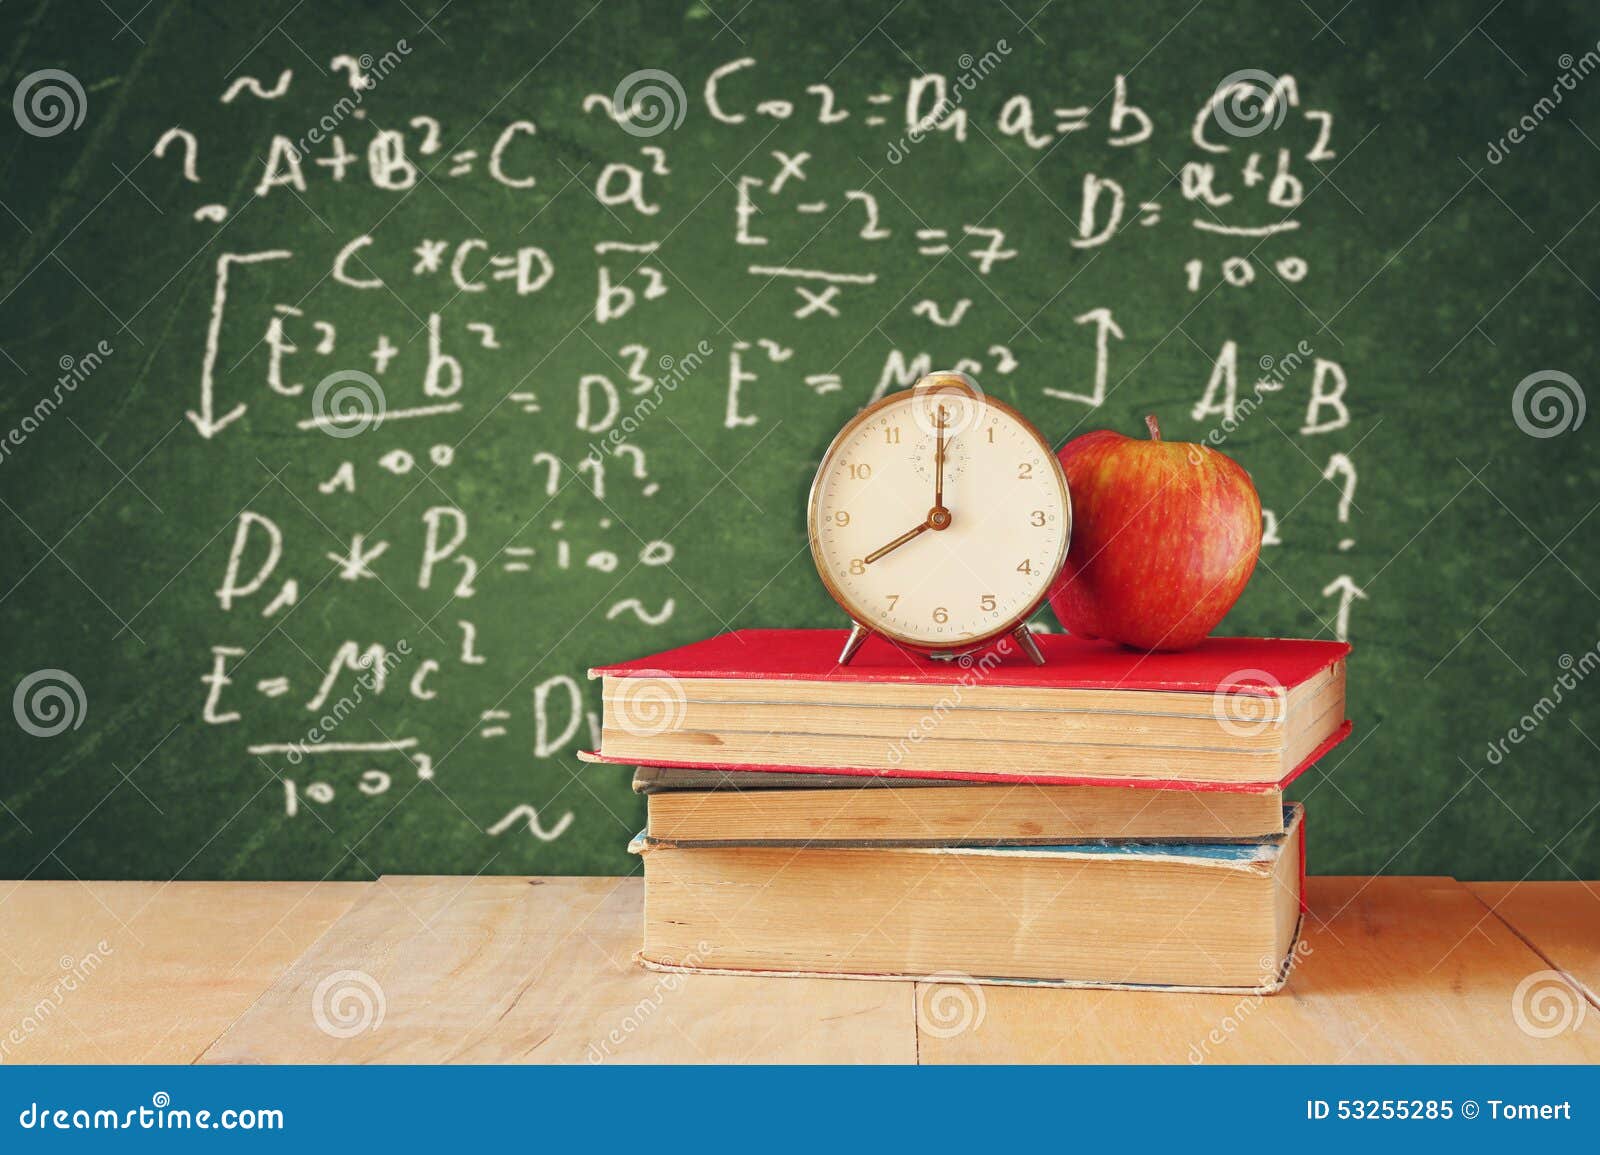 image school books wooden desk apple vintage clock over green background formulas education concept 53255285